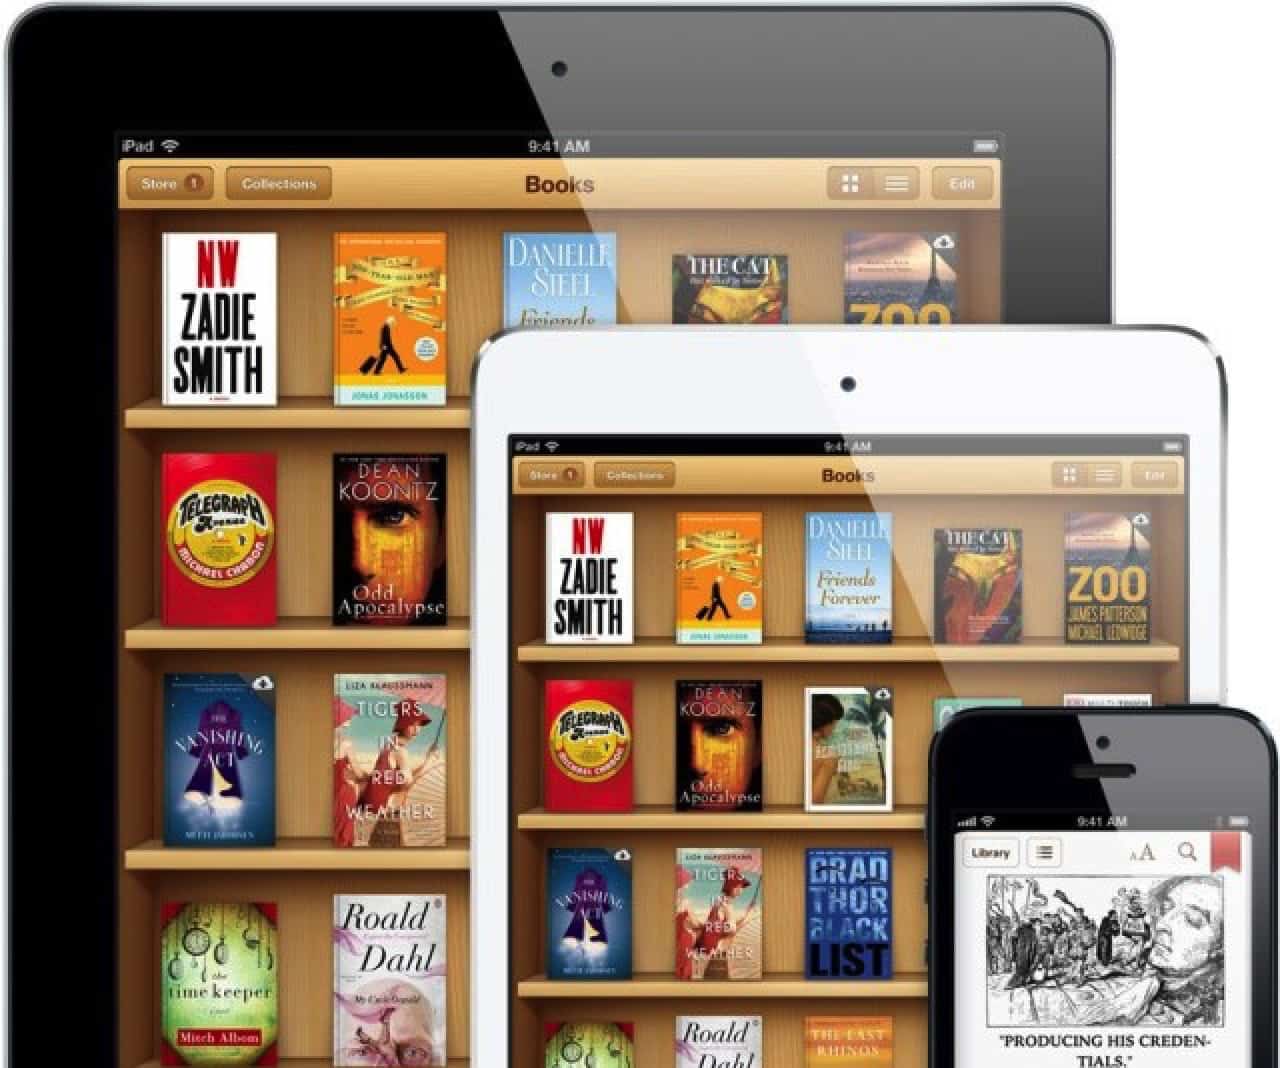 Этот день в истории Apple: урегулирование антимонопольного разбирательства с iBooks Store